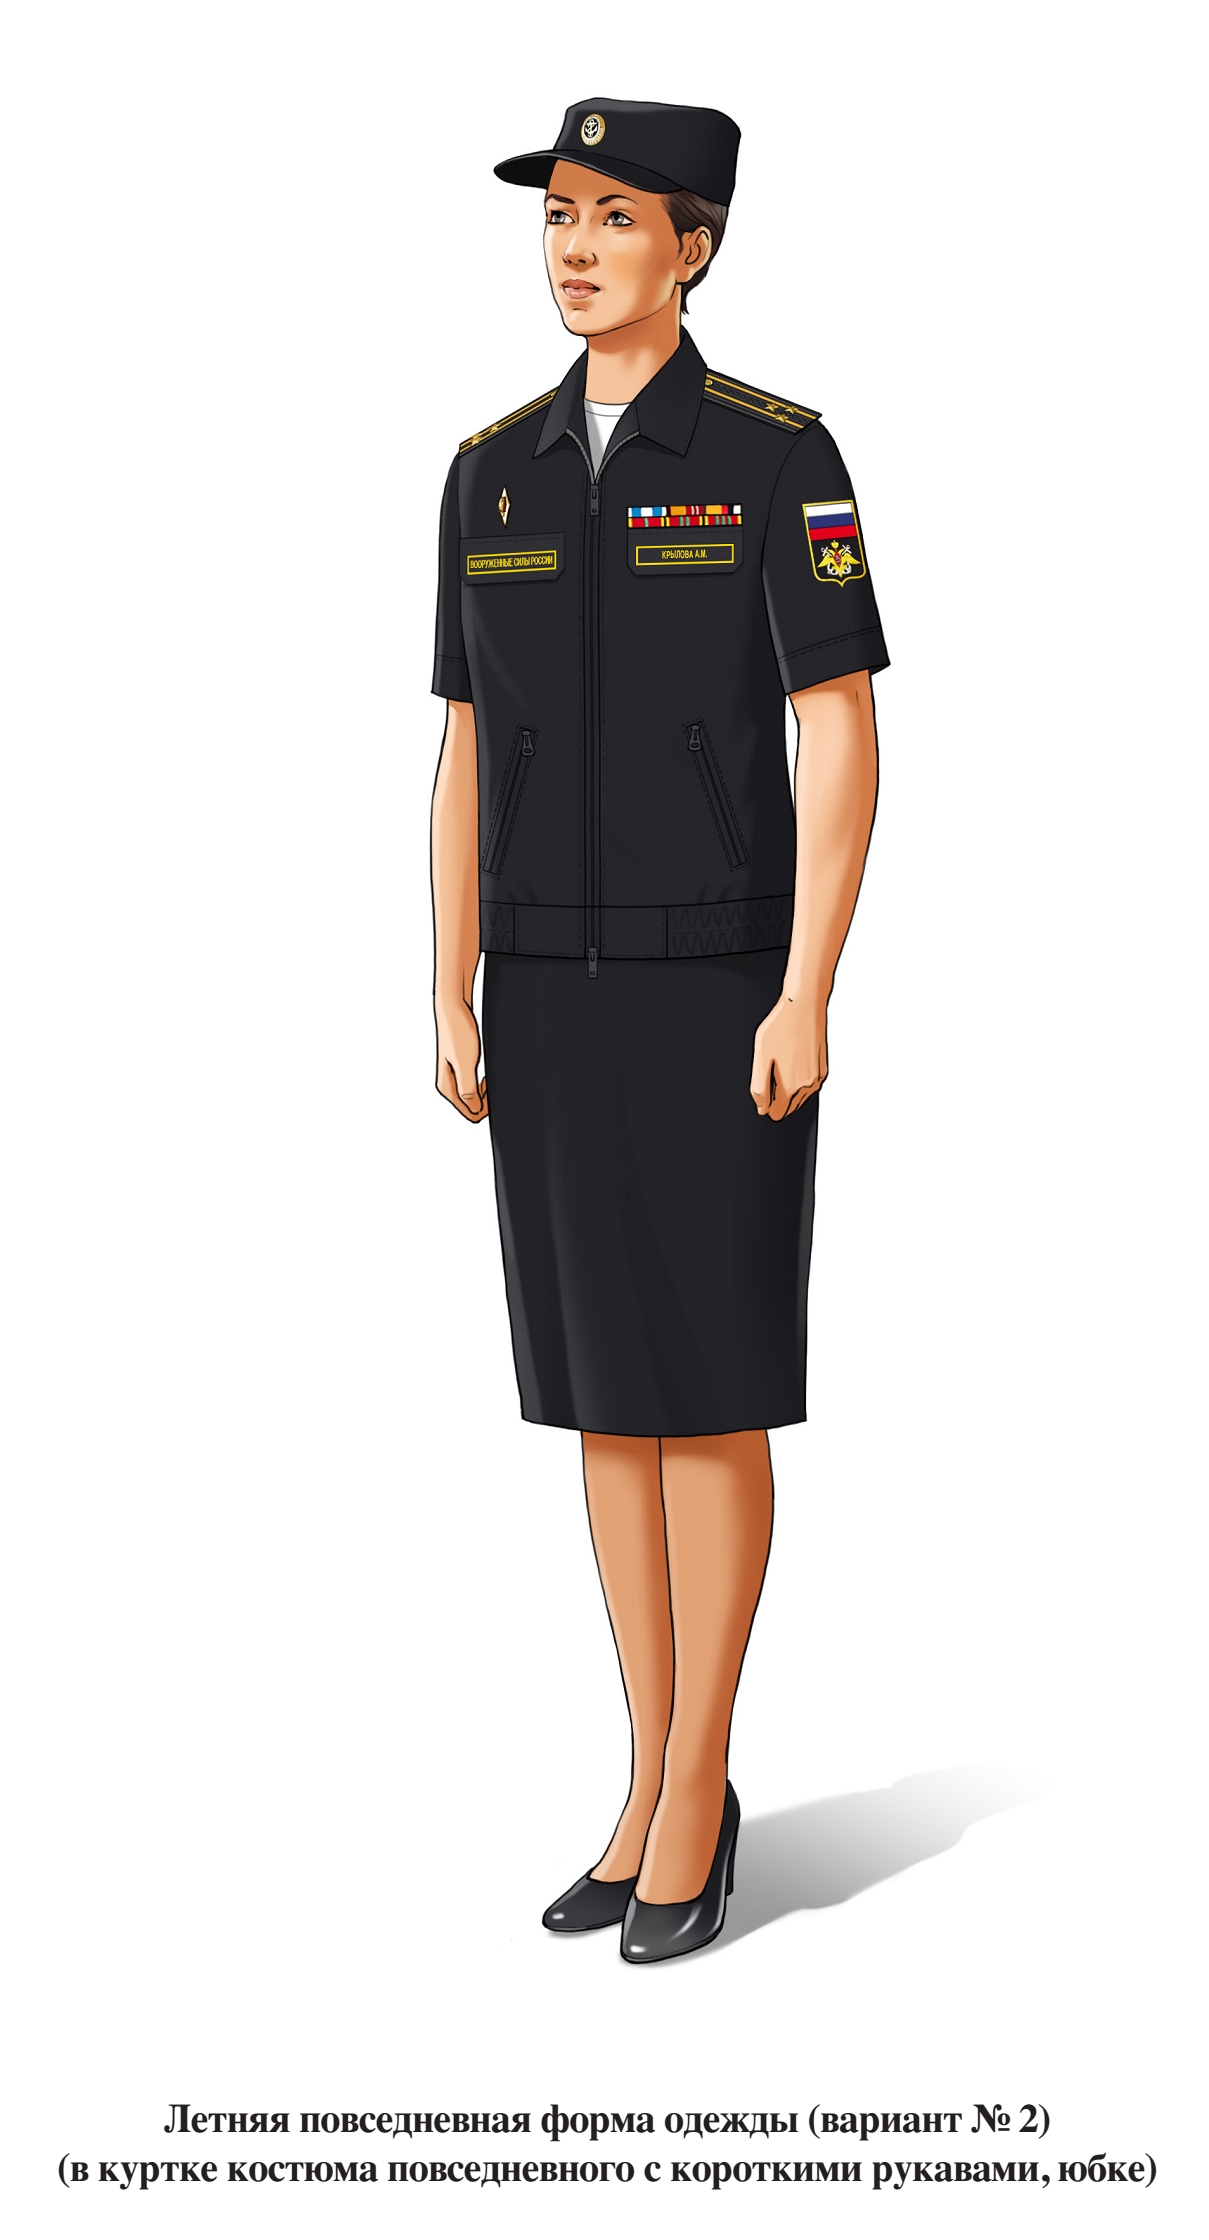 Летняя повседневная офисная форма военнослужащих женского пола ВМФ, в юбке и куртке с коротким рукавом